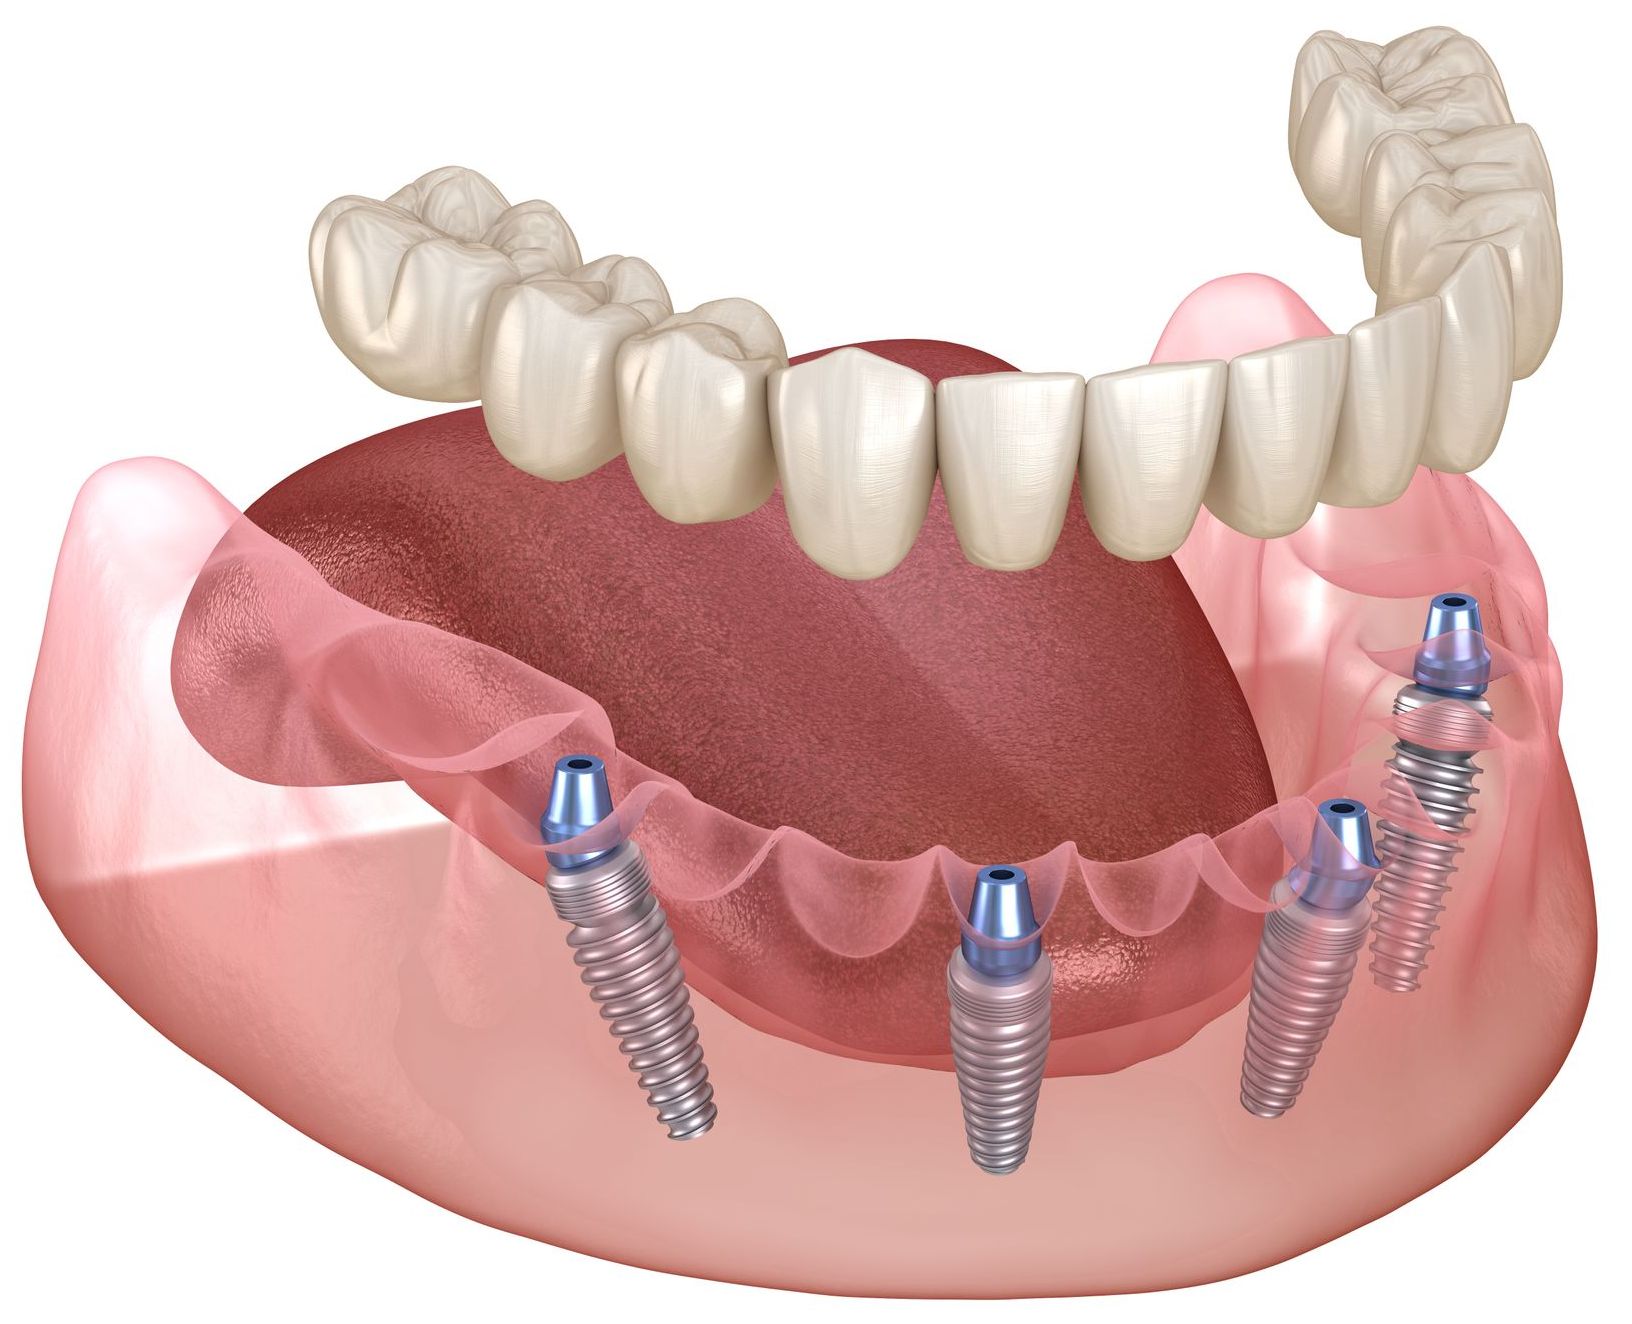 model of fixed dentures